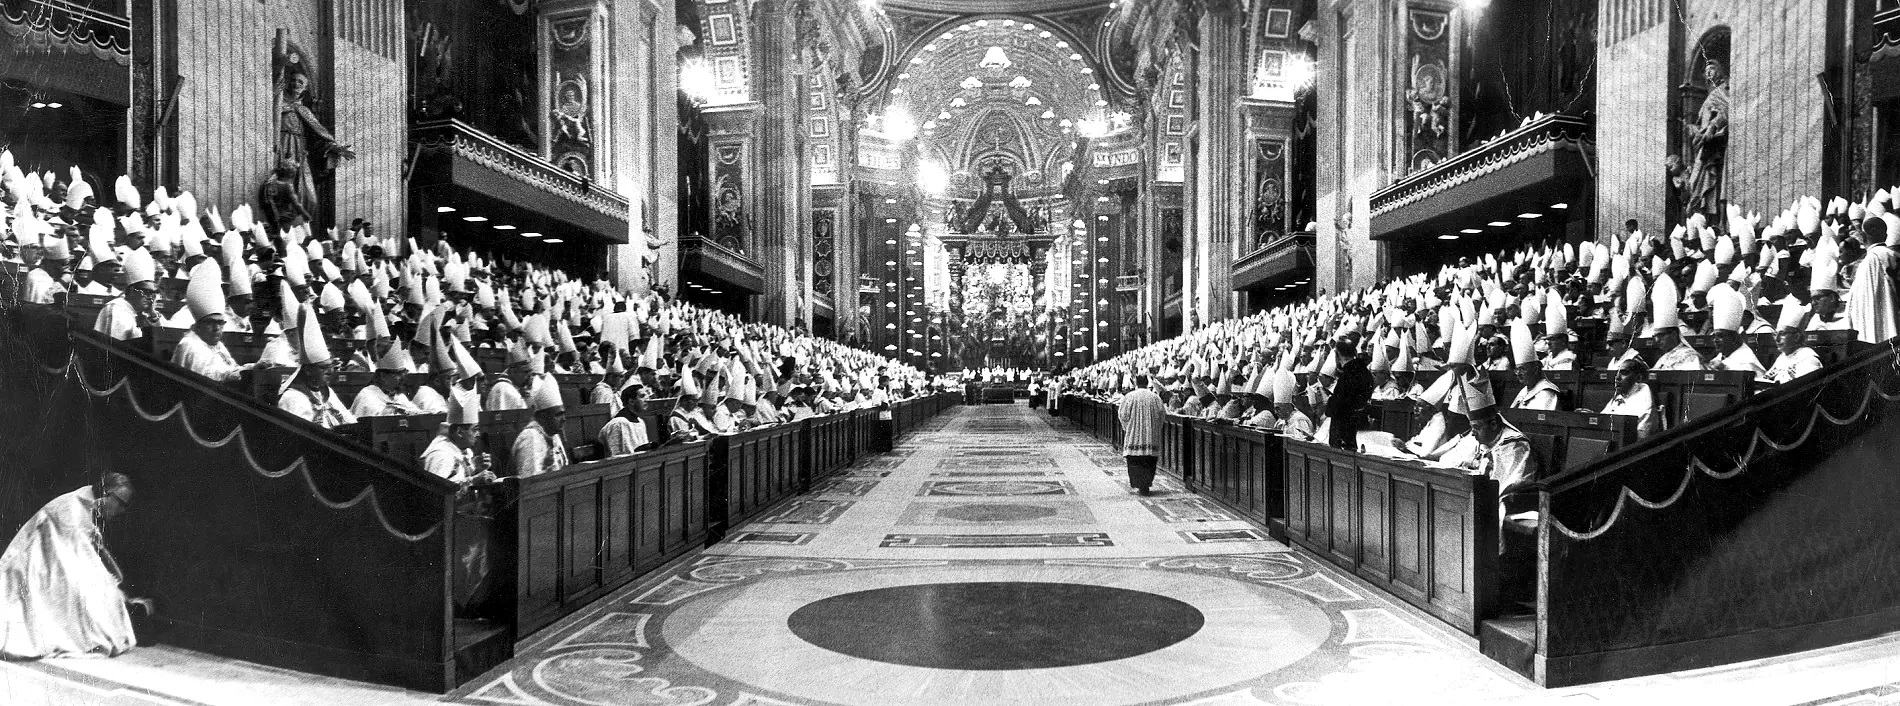 Chiesa e modernità 60 anni dopo il Concilio Vaticano II: alla Fondazione Campostrini seminari sui temi centrali